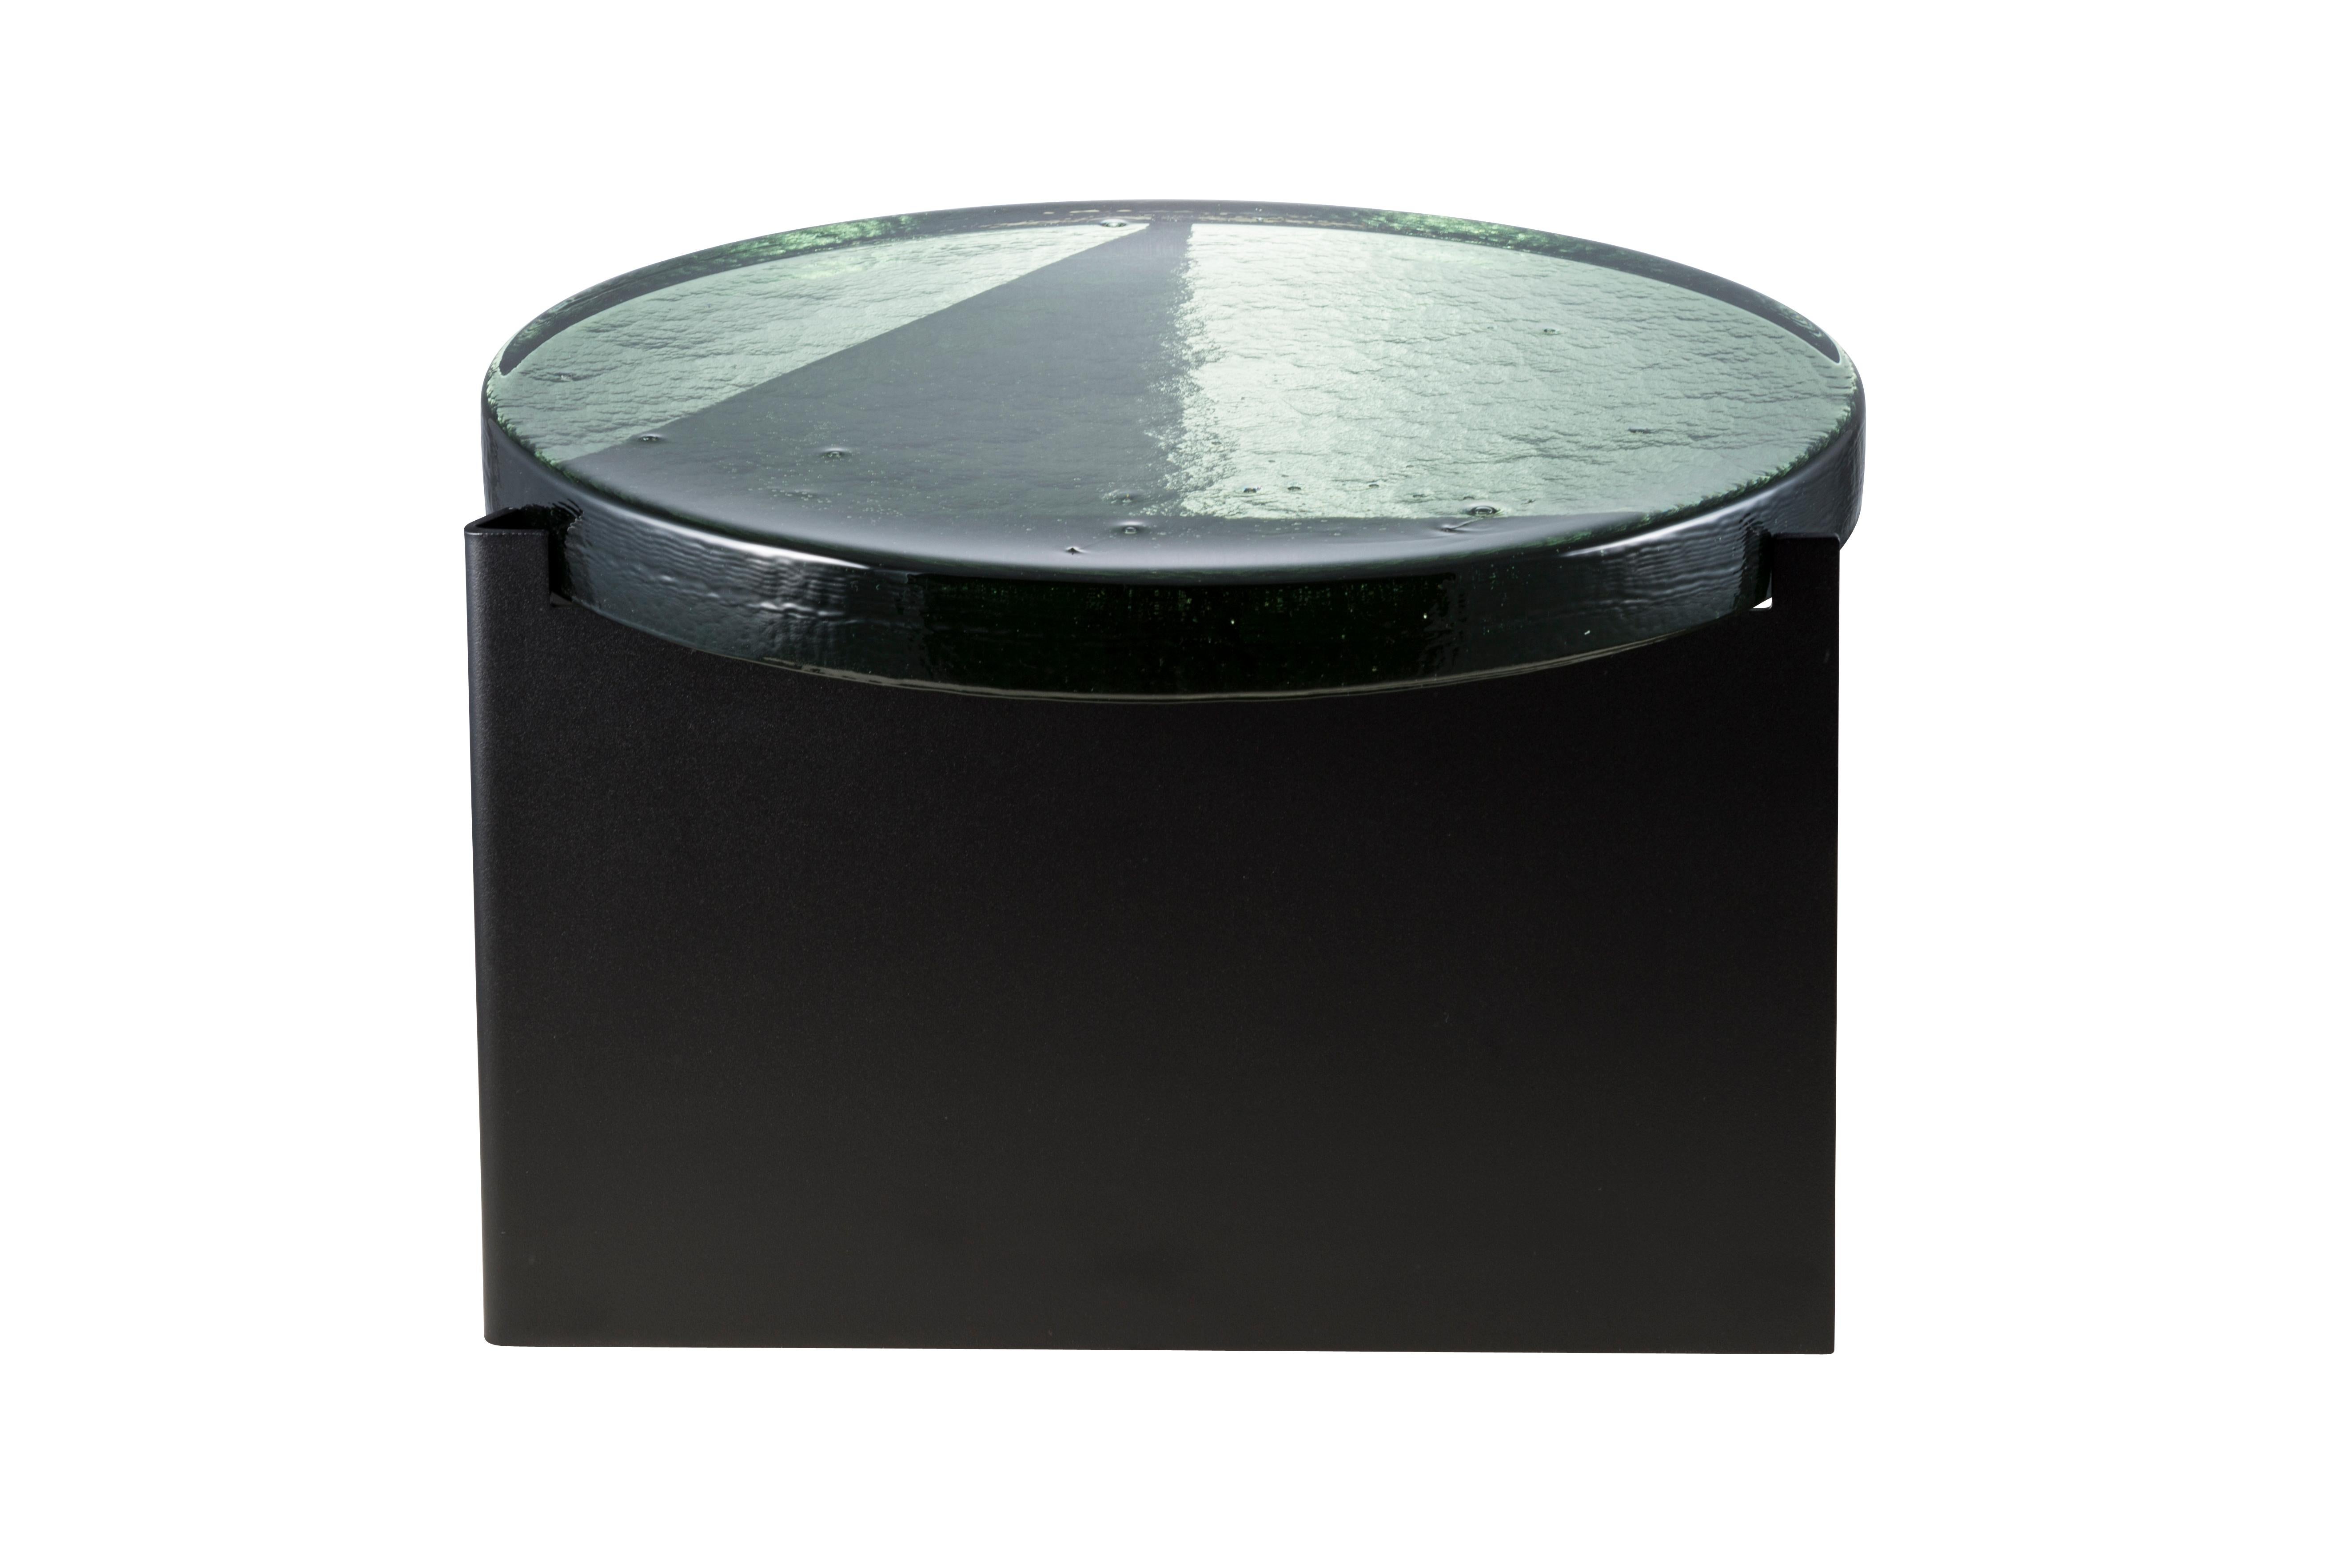 Table basse Alwa one big green black par Pulpo.
Dimensions : D56 x H35 cm.
MATERIAL : verre coulé ; acier revêtu de poudre. 

Disponible également en différentes finitions.

Normalement, le verre est considéré comme un matériau léger aux arêtes